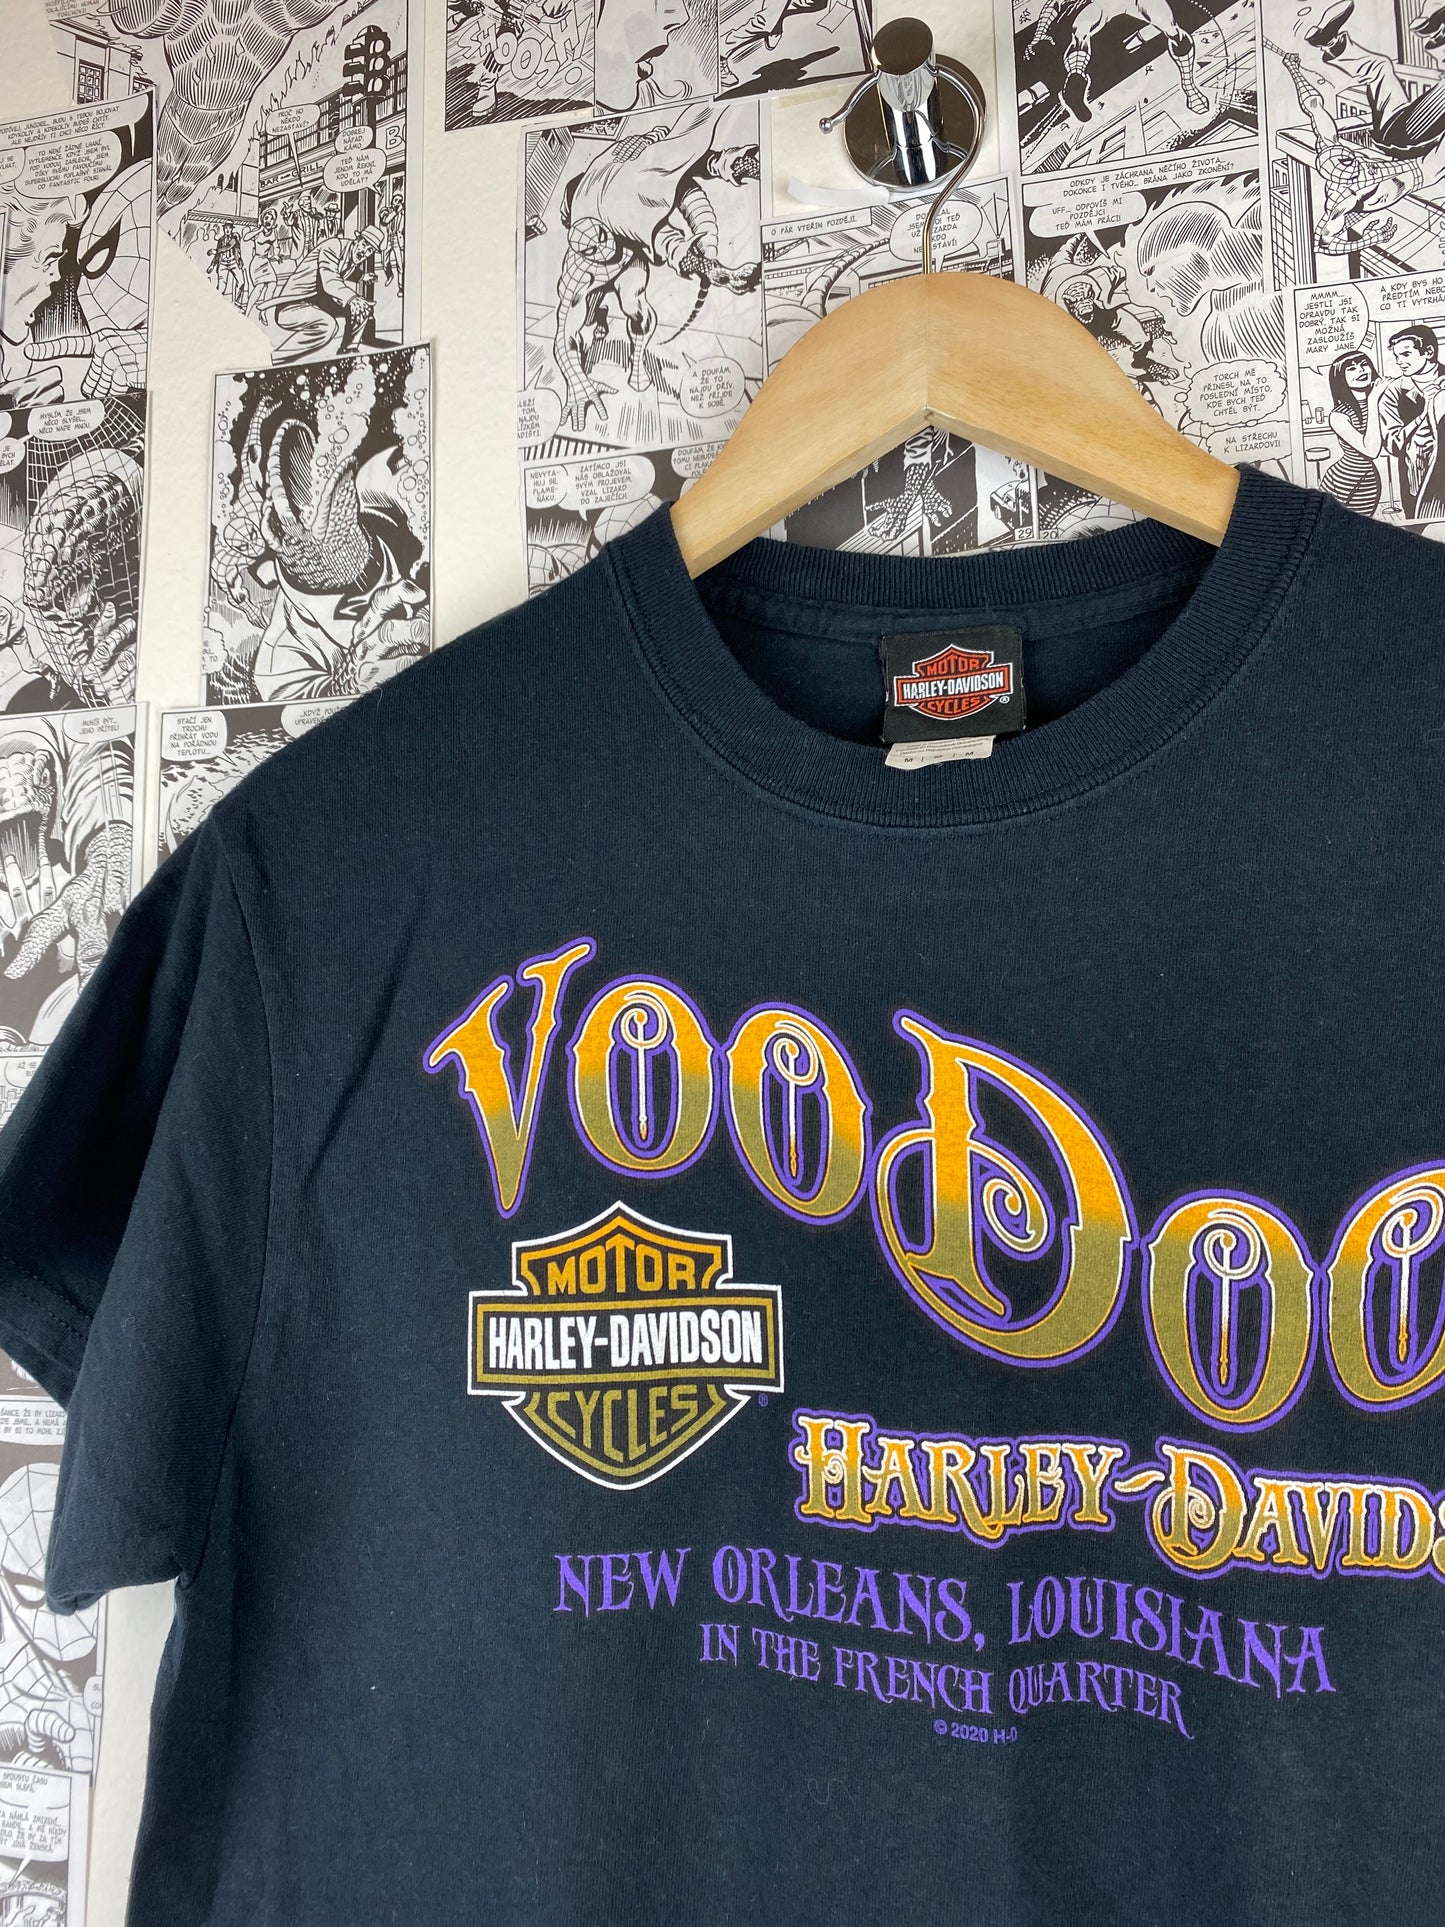 Vintage Harley Davidson “VooDoo” - New Orleans t-shirt - size M